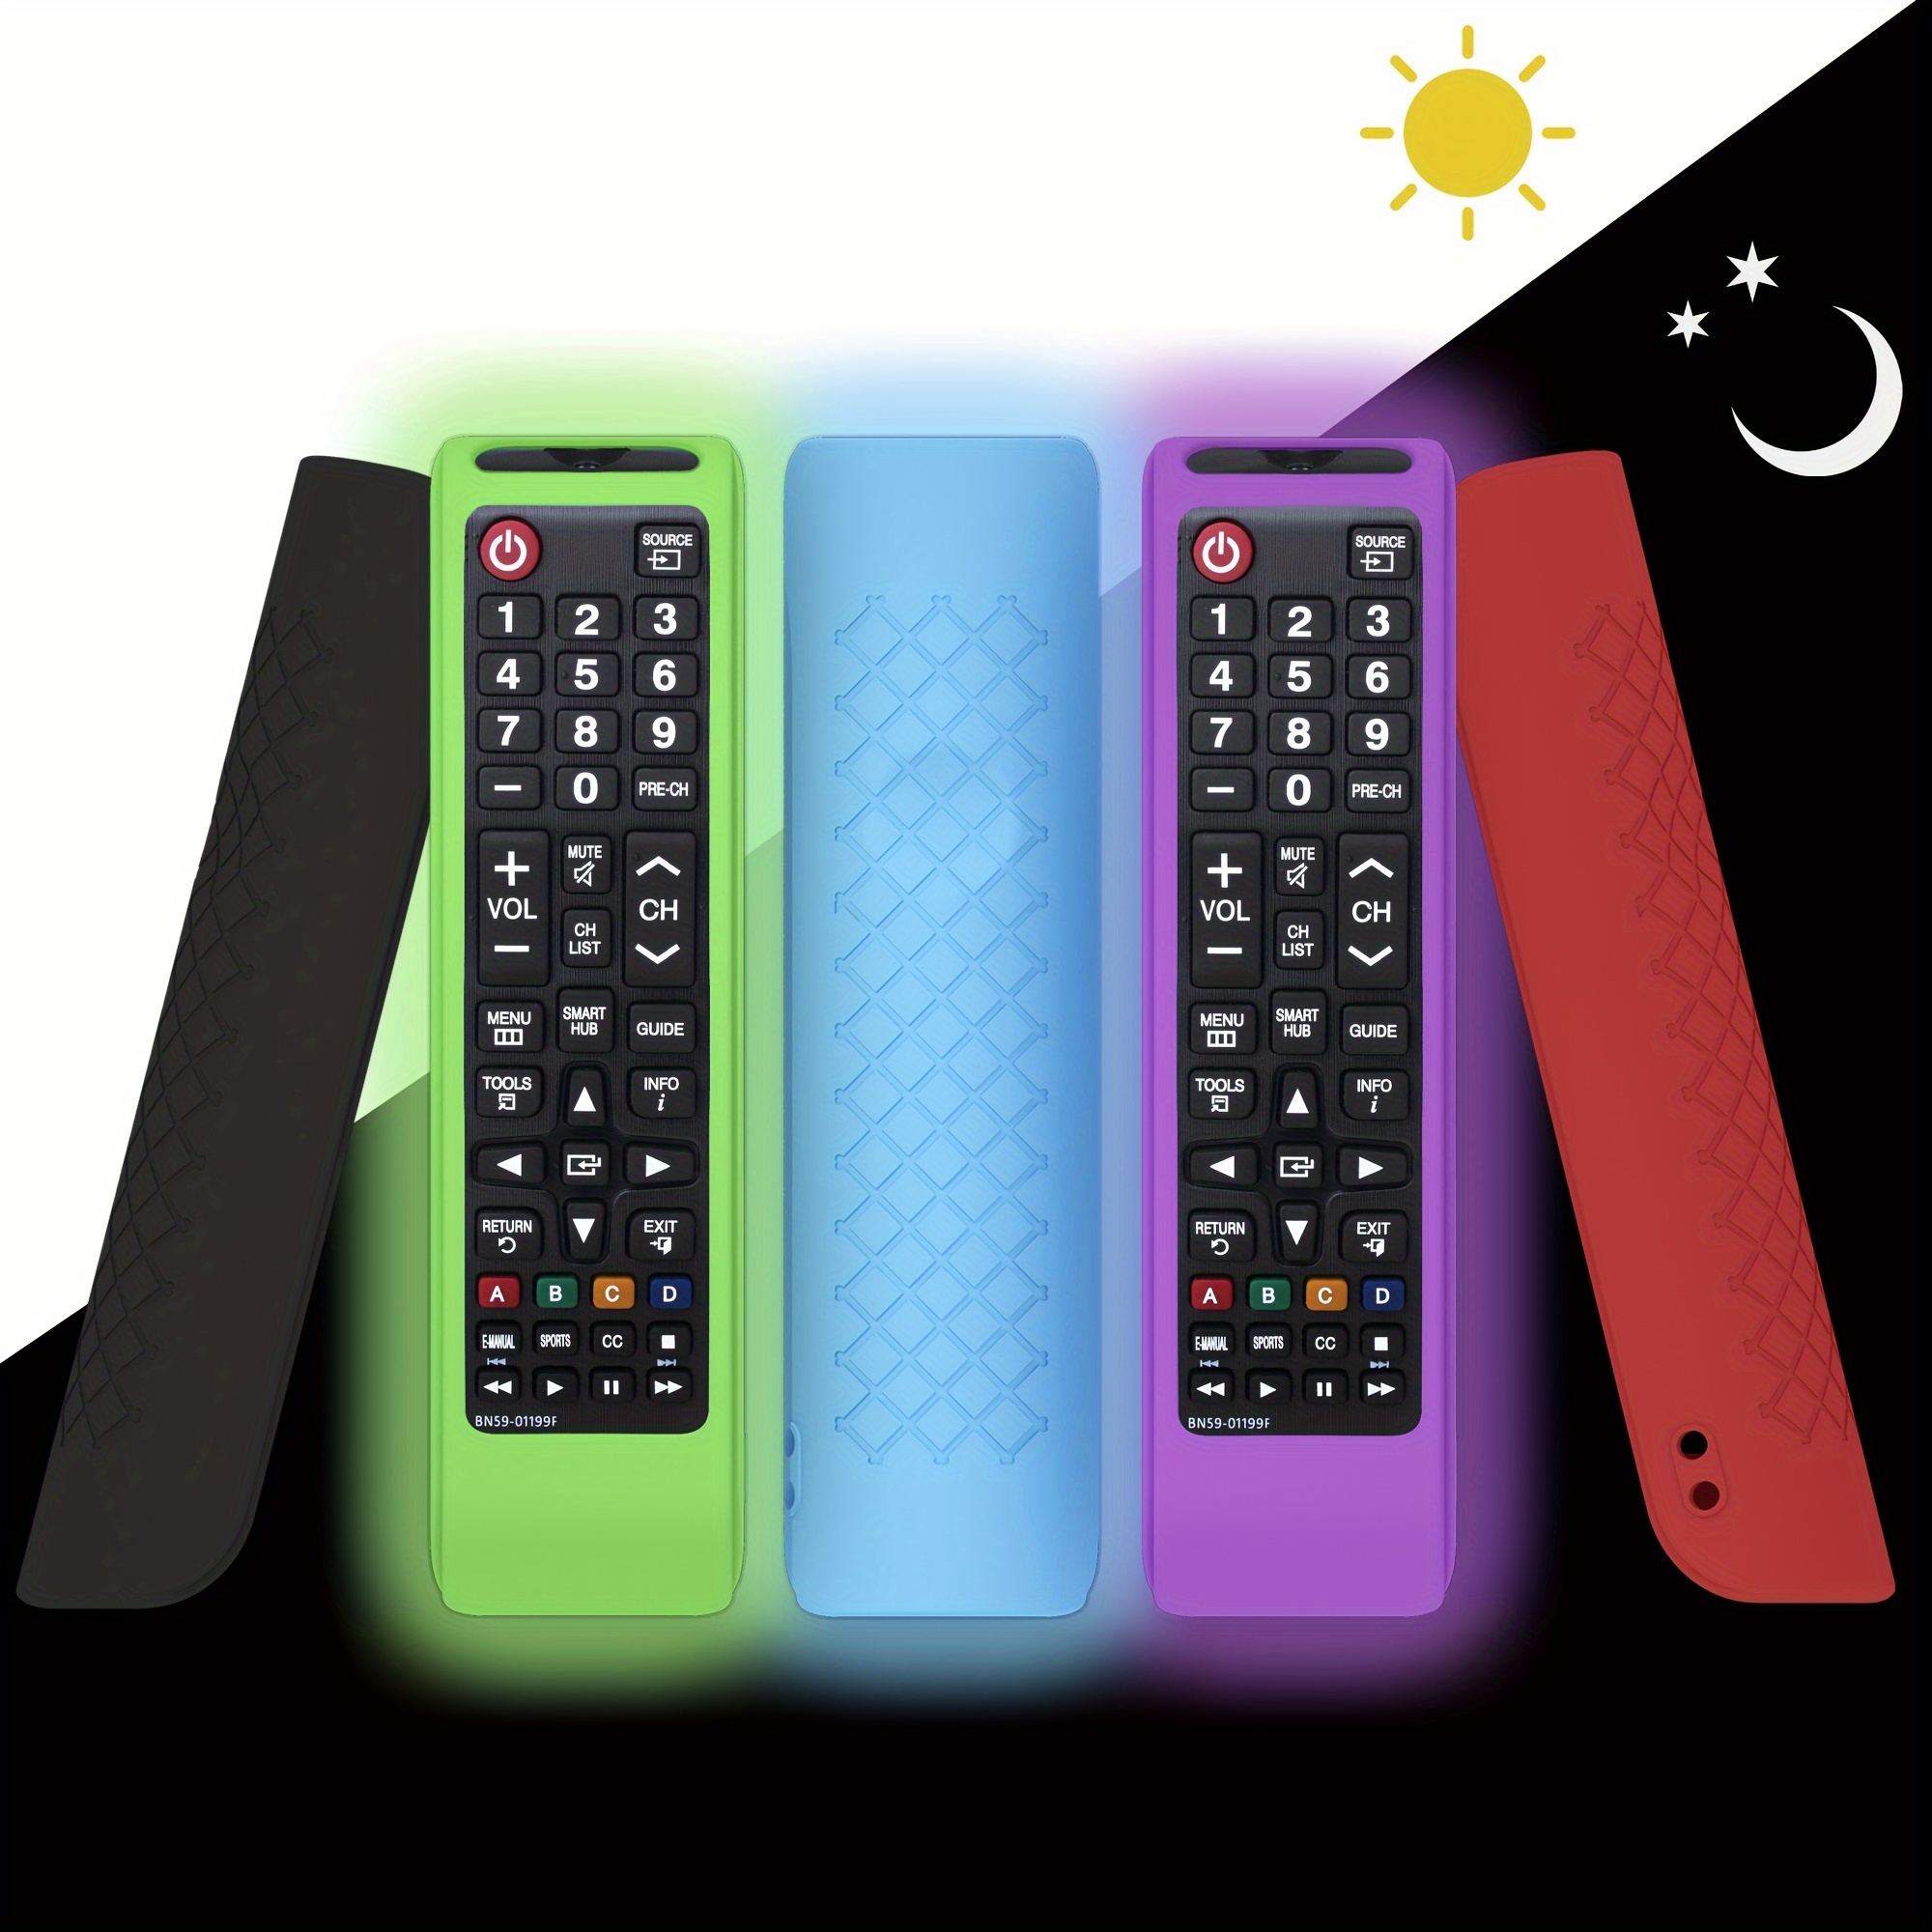 Télécommande IR universelle pour LG Smart TV, Maroc